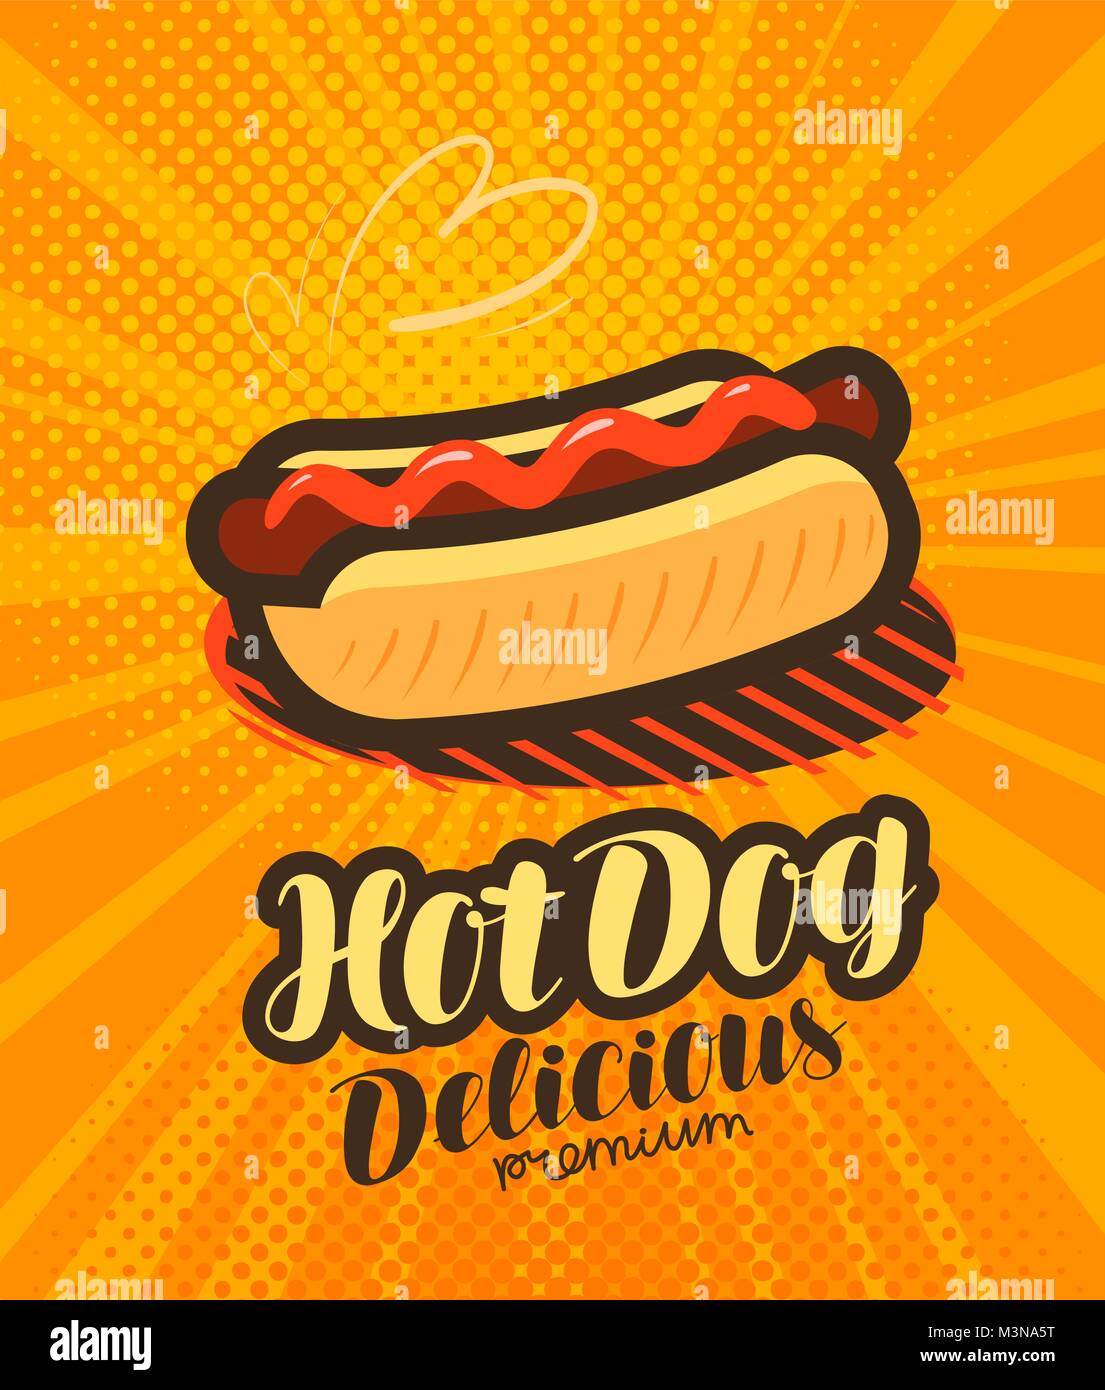 American Hot Dog, fast food poster. La Pop art rétro in stile fumetto. Fumetto illustrazione vettoriale Illustrazione Vettoriale